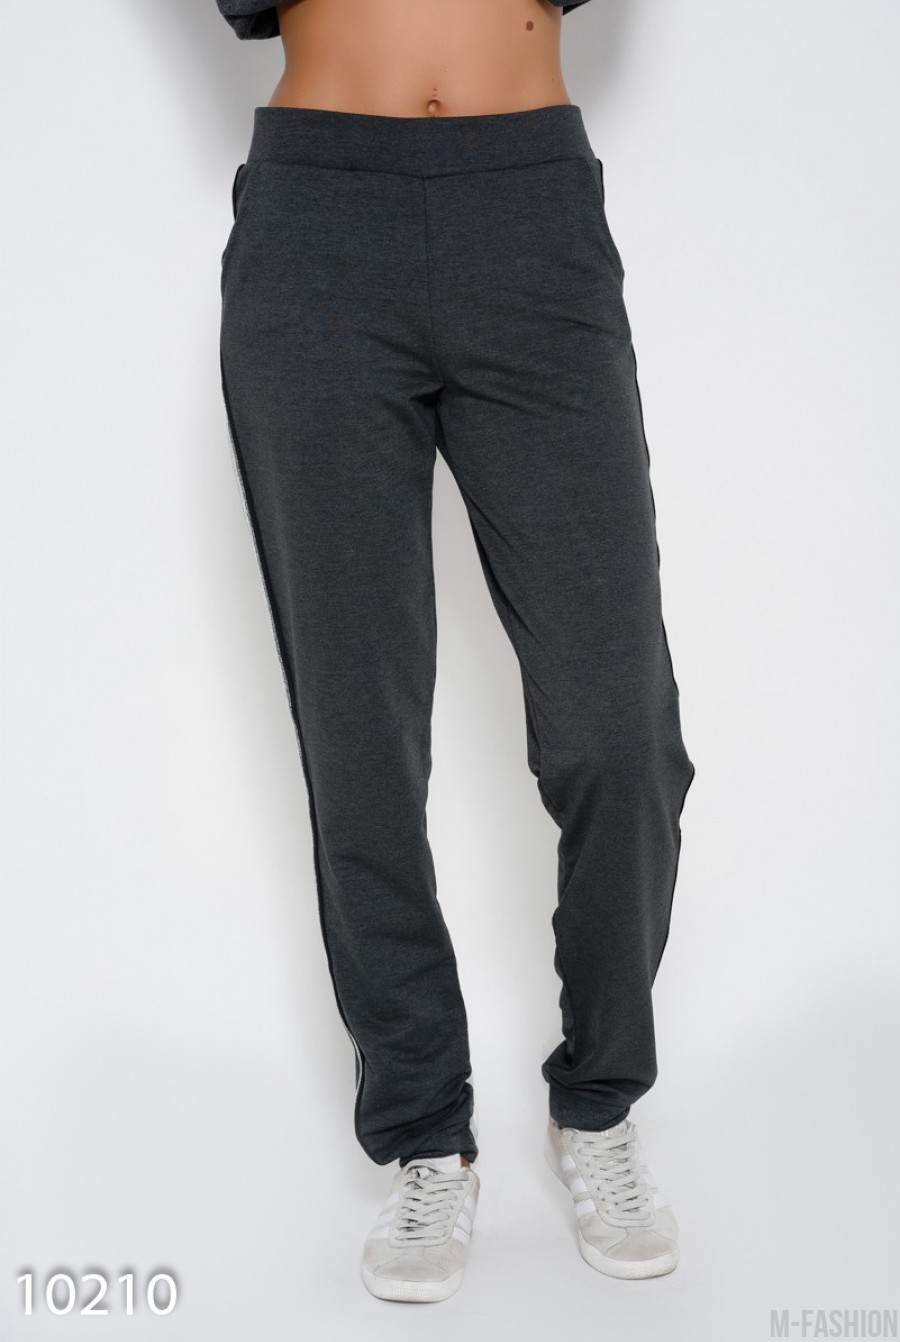 Темно-серые трикотажный штаны с карманами и лампасами с люрексом - Фото 1